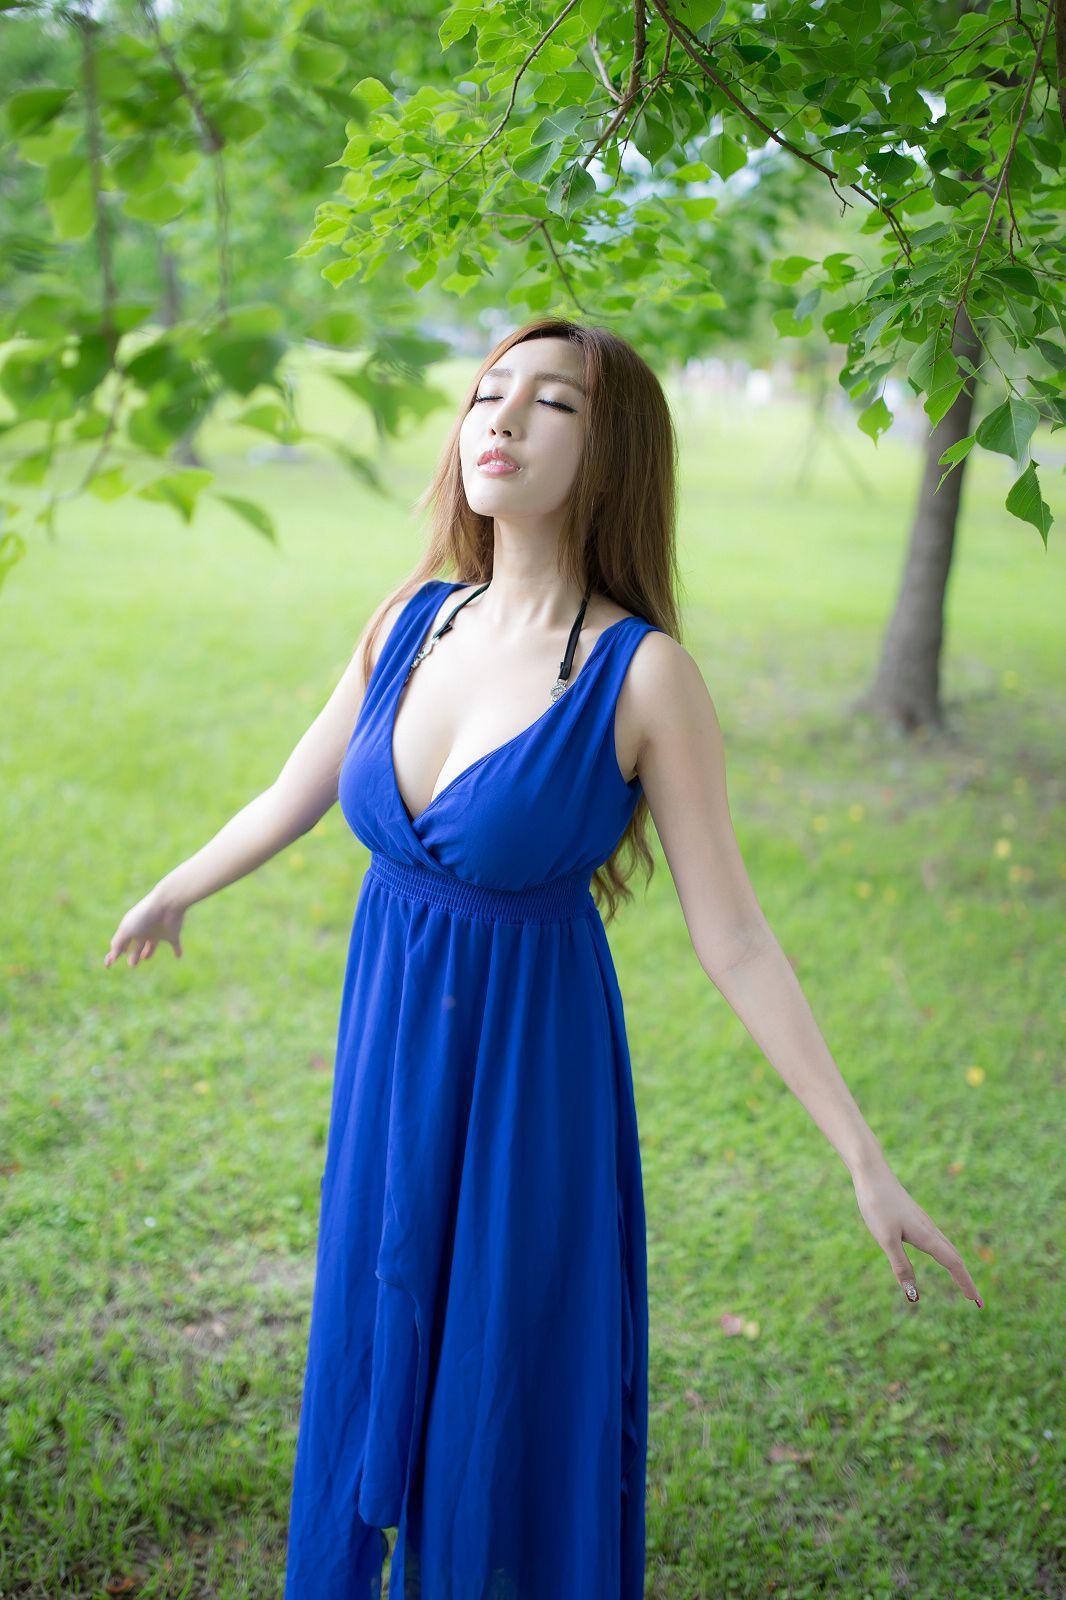 台湾赵芸Syuan《极品蓝色长裙女神》写真集(26)